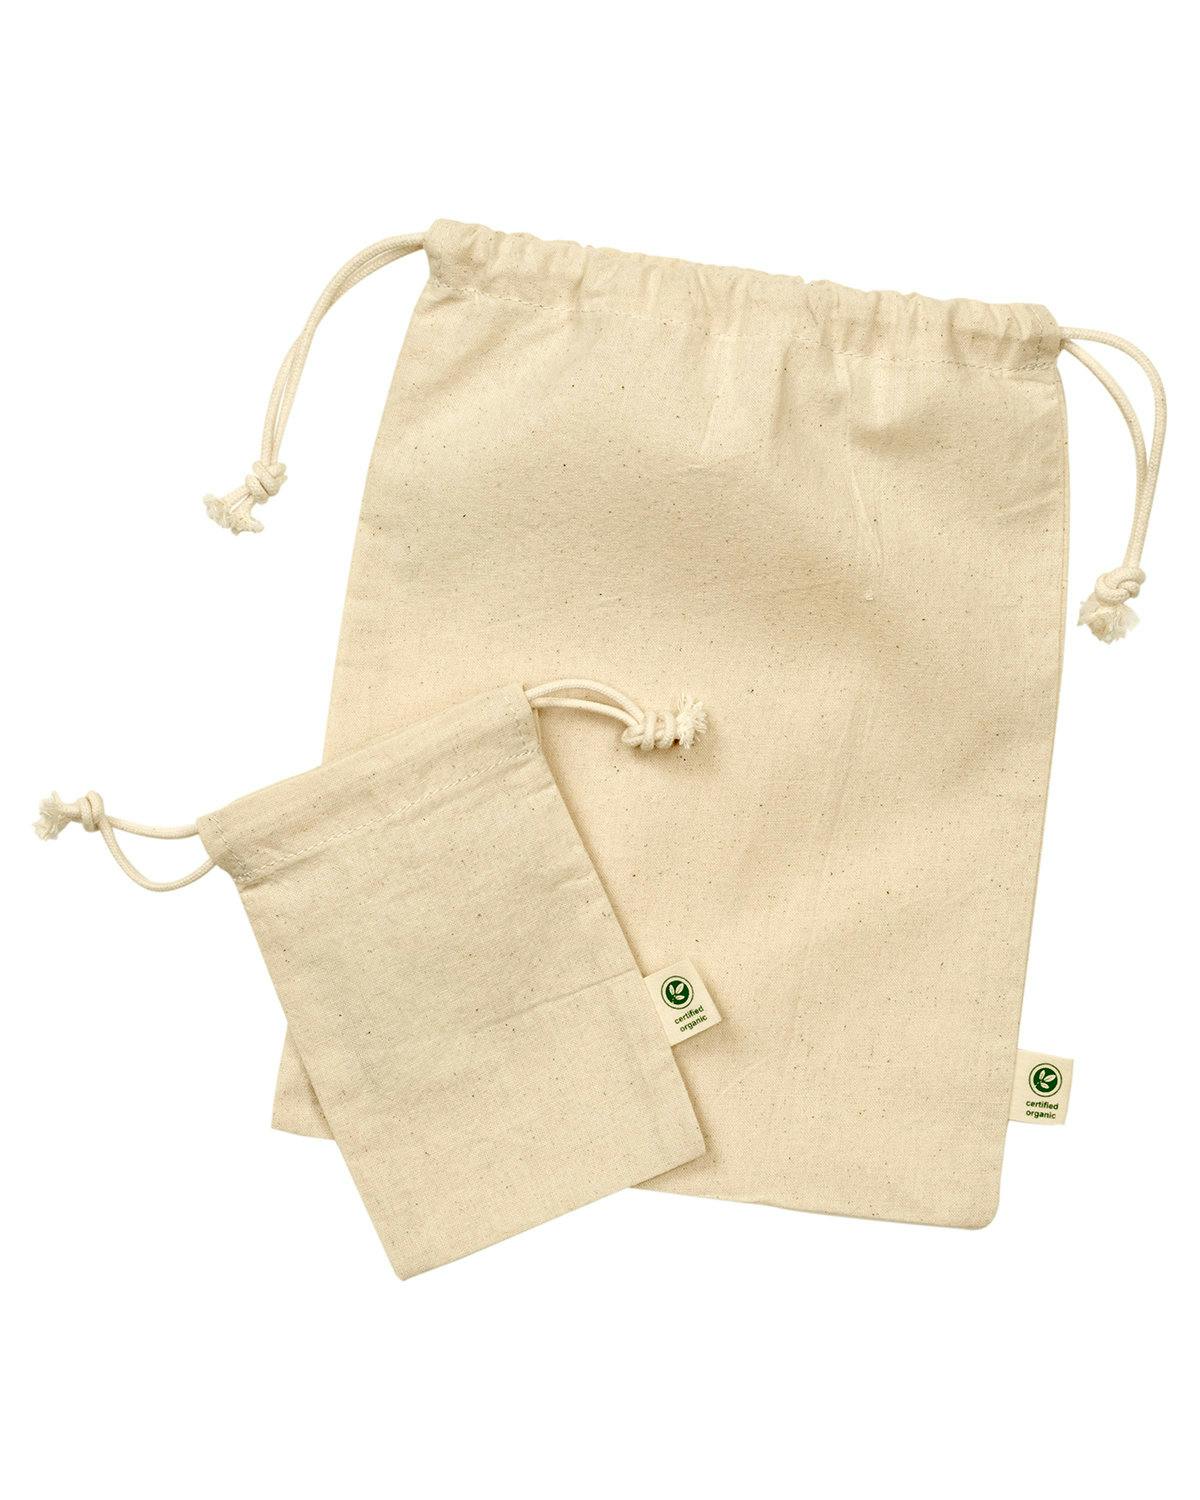 Image for Eco Gift Bag